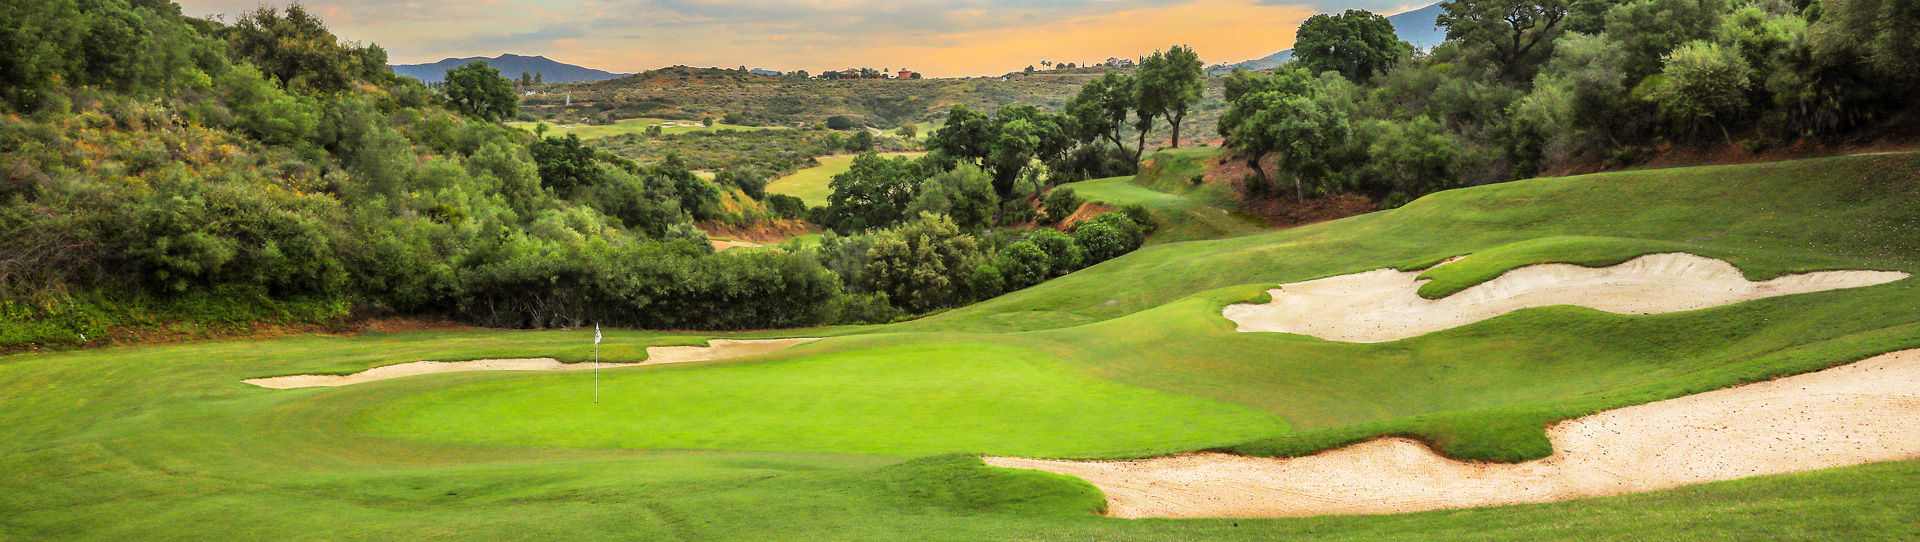 Spain golf courses - La Cala Asia - Photo 3